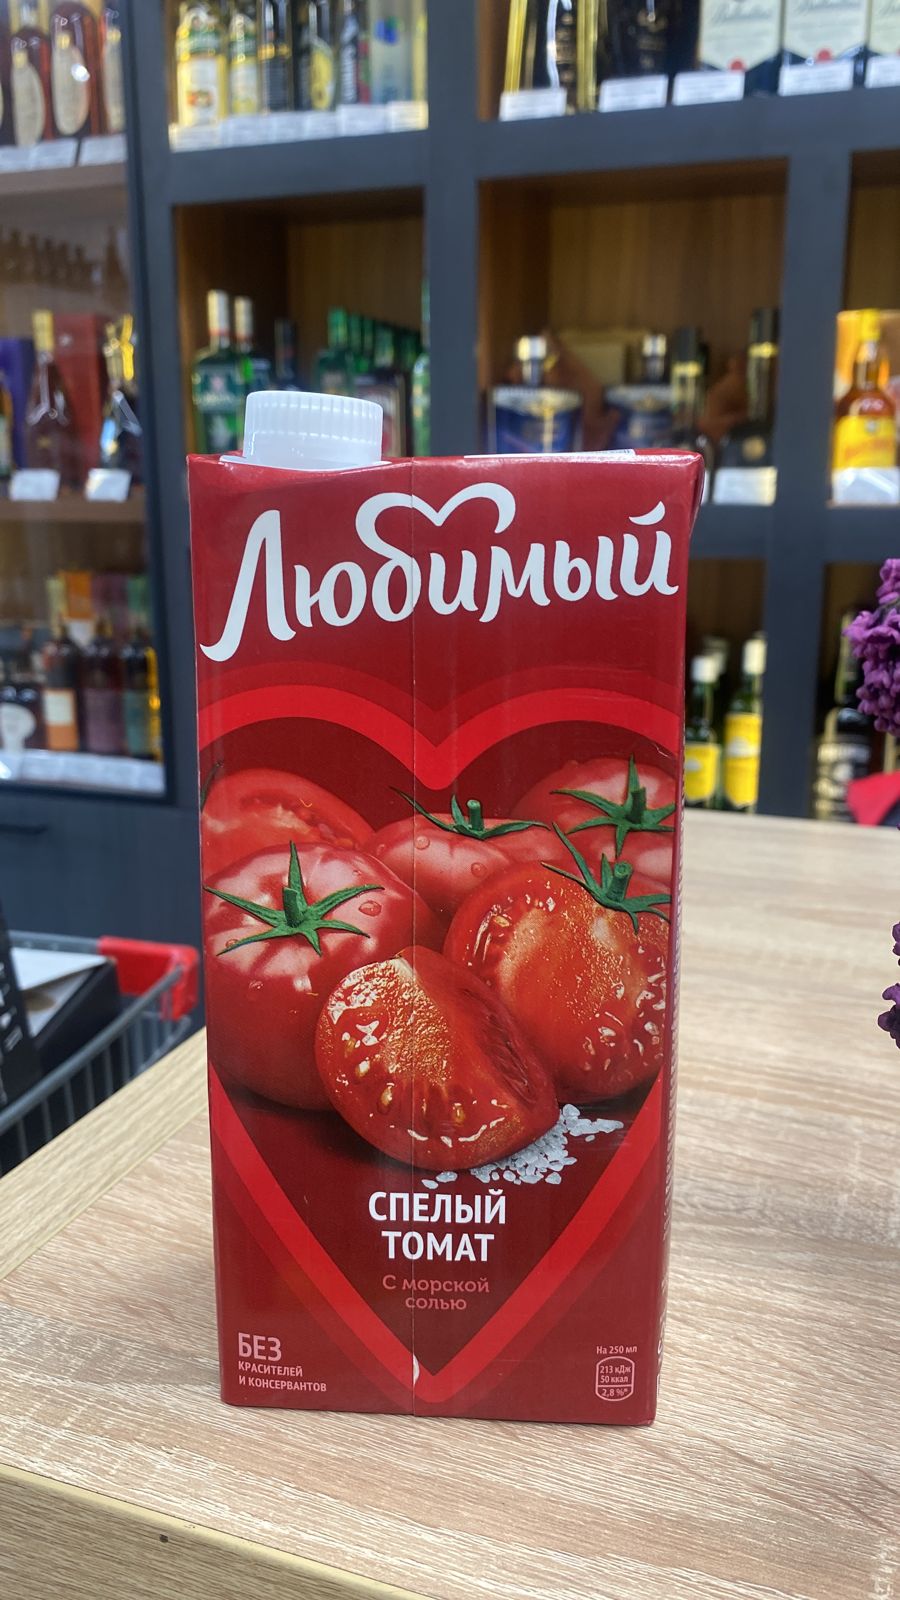 Сок Любимый "Спелый томат" 1 литр (ВТ)